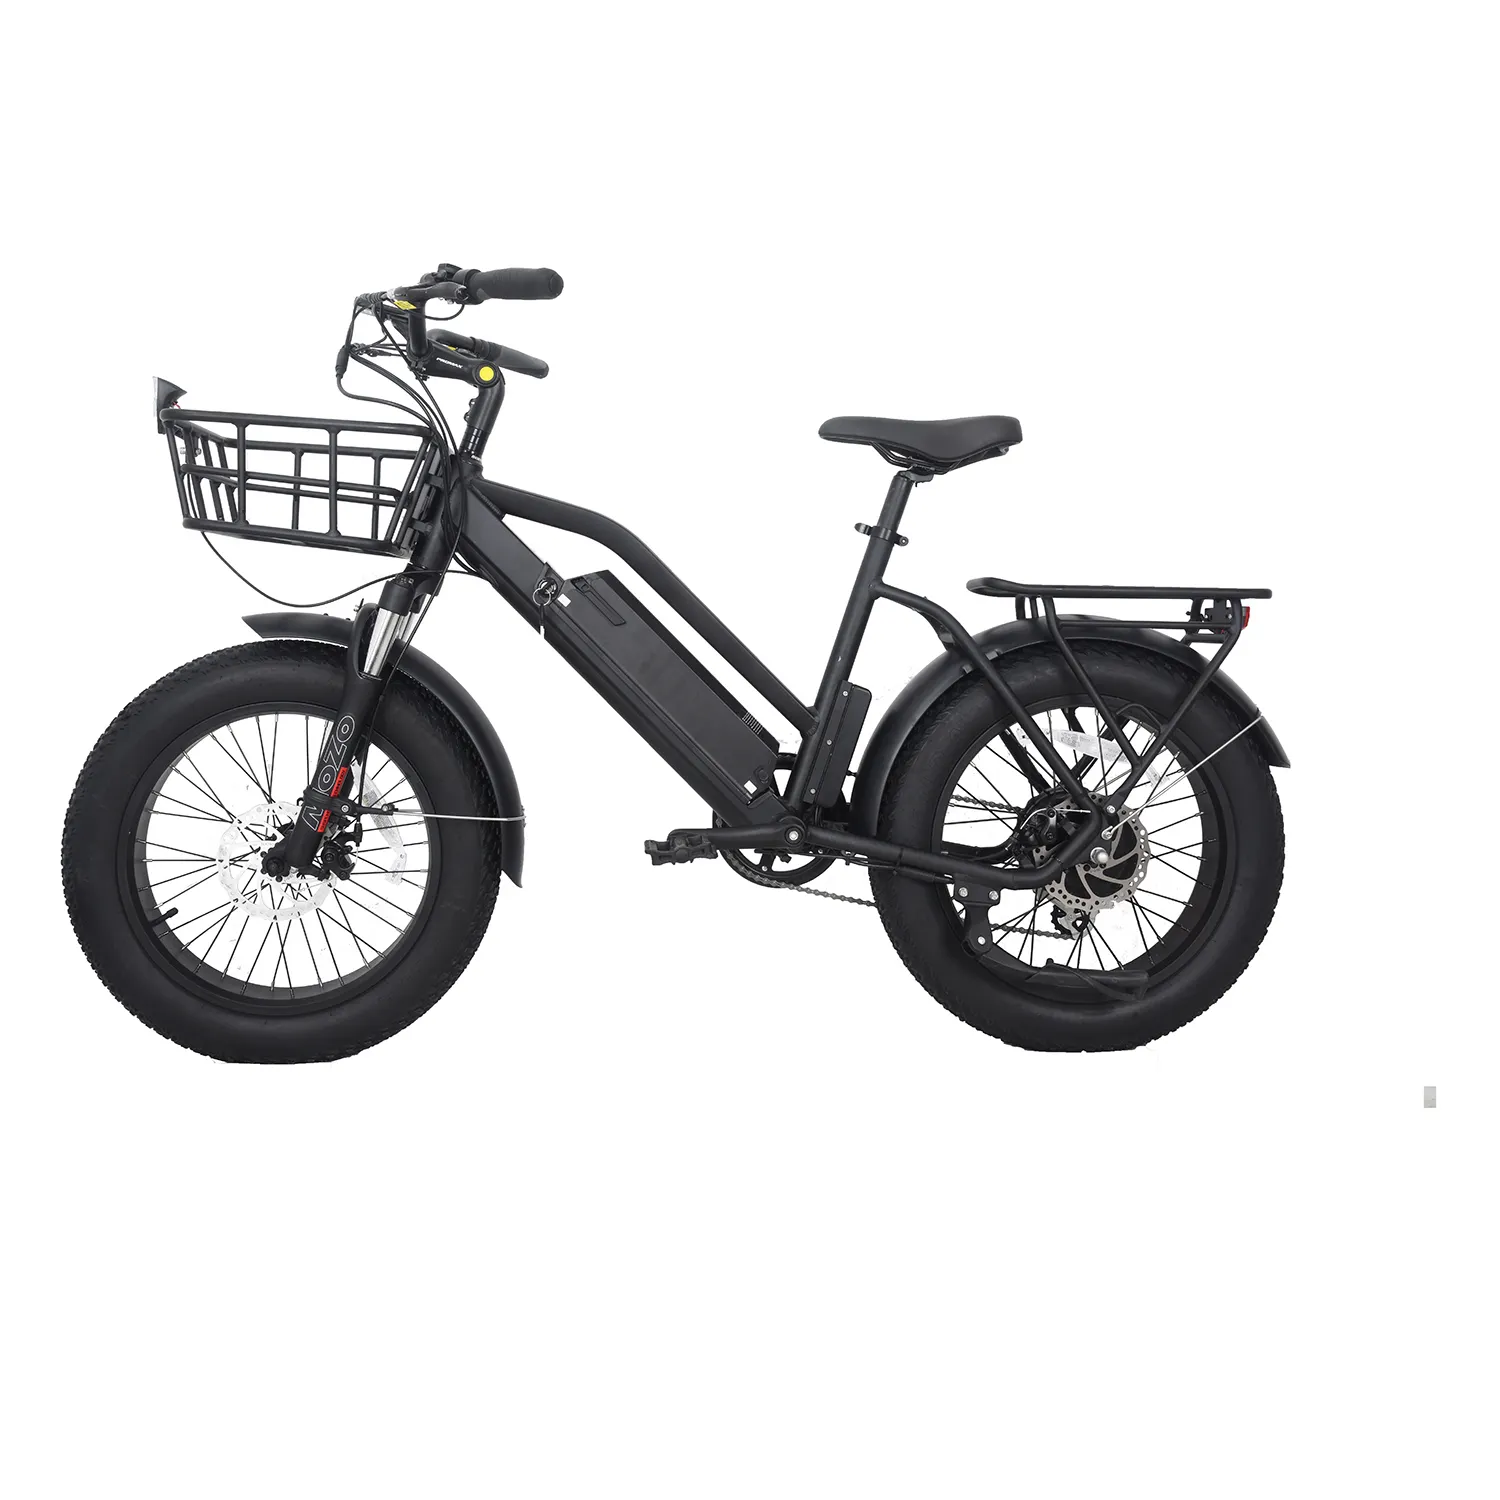 Bicicleta elétrica de pneu largo com 48v 14ah, preço competitivo, 2022 w, 750w